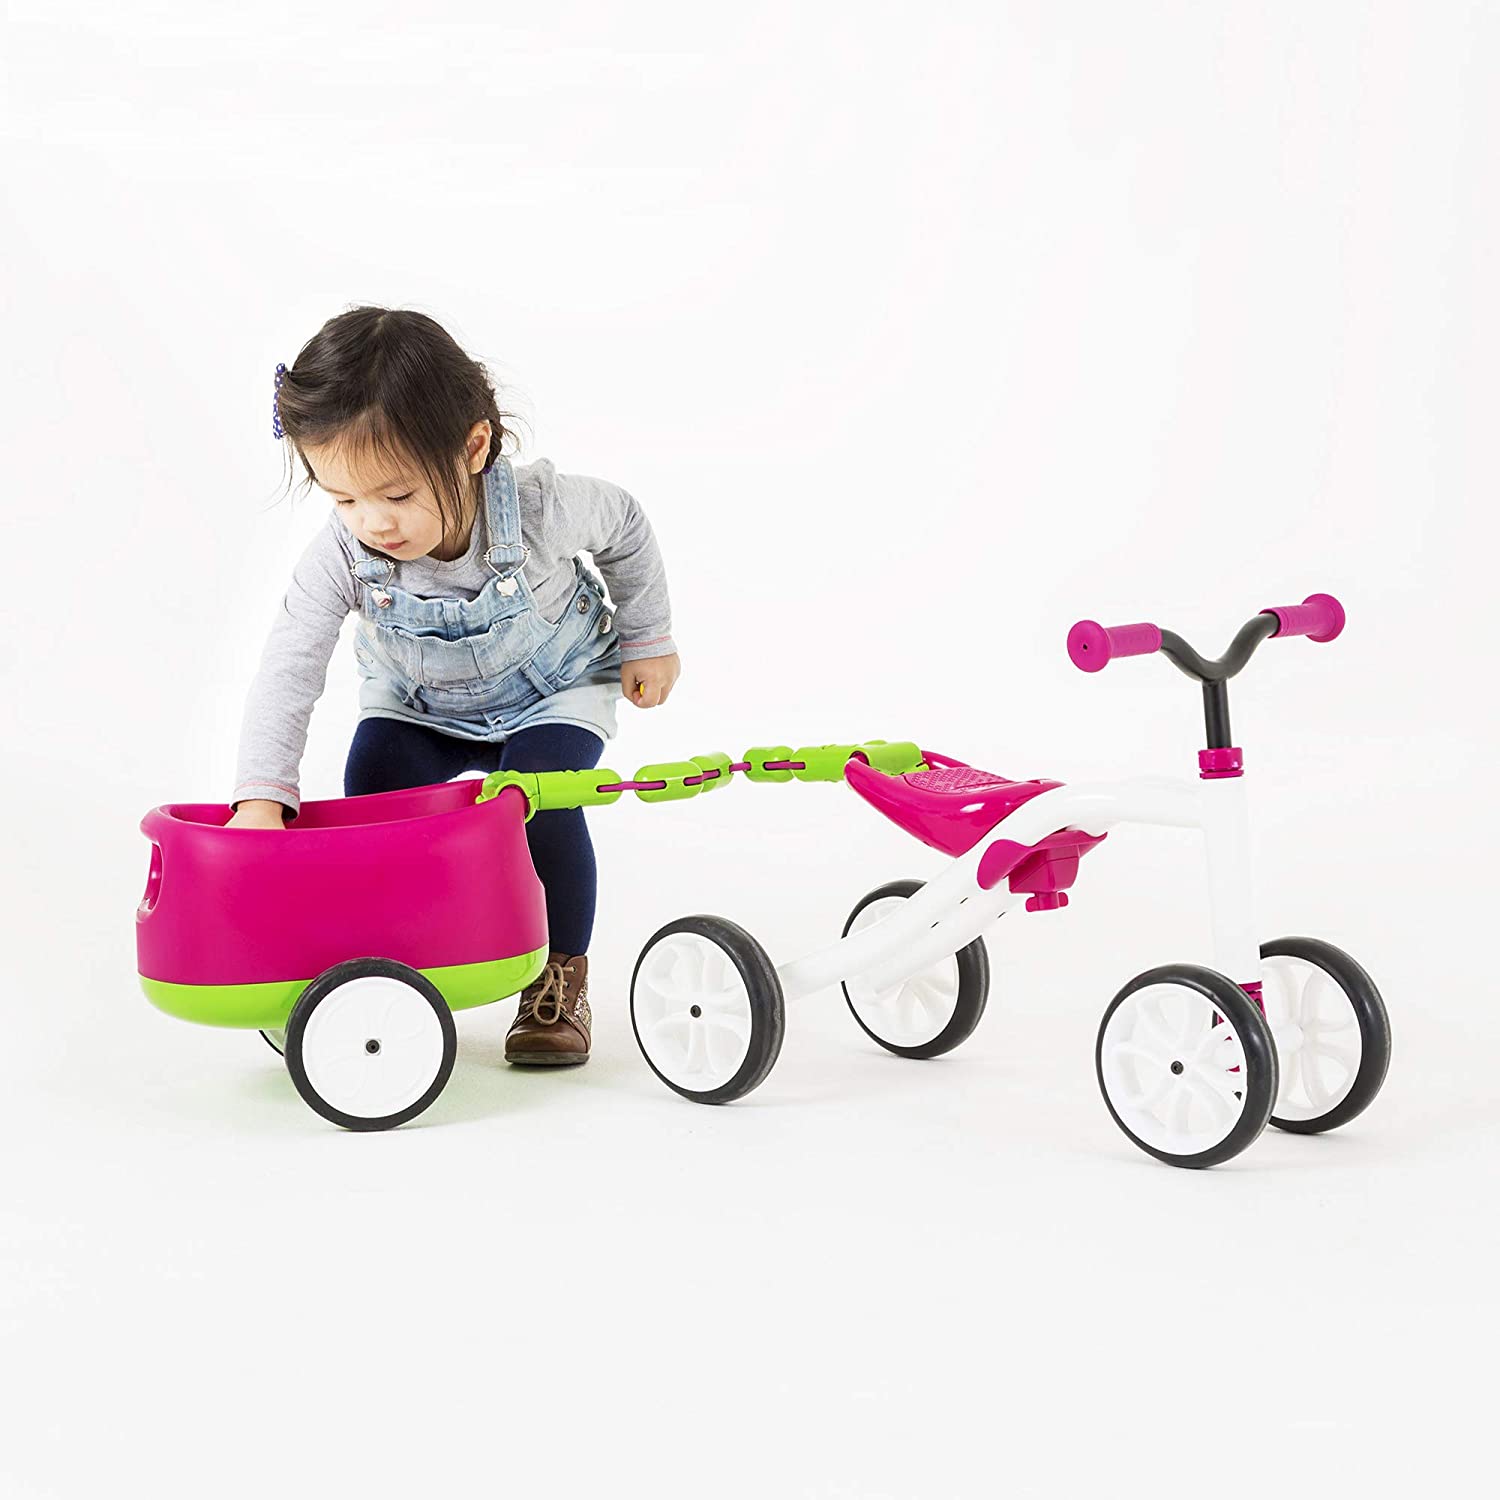 Bicicletă roz cu 4 roți, fără pedale, reglabilă pe înălțime și remorcă detașabilă – Quadie Trailie edituradiana.ro